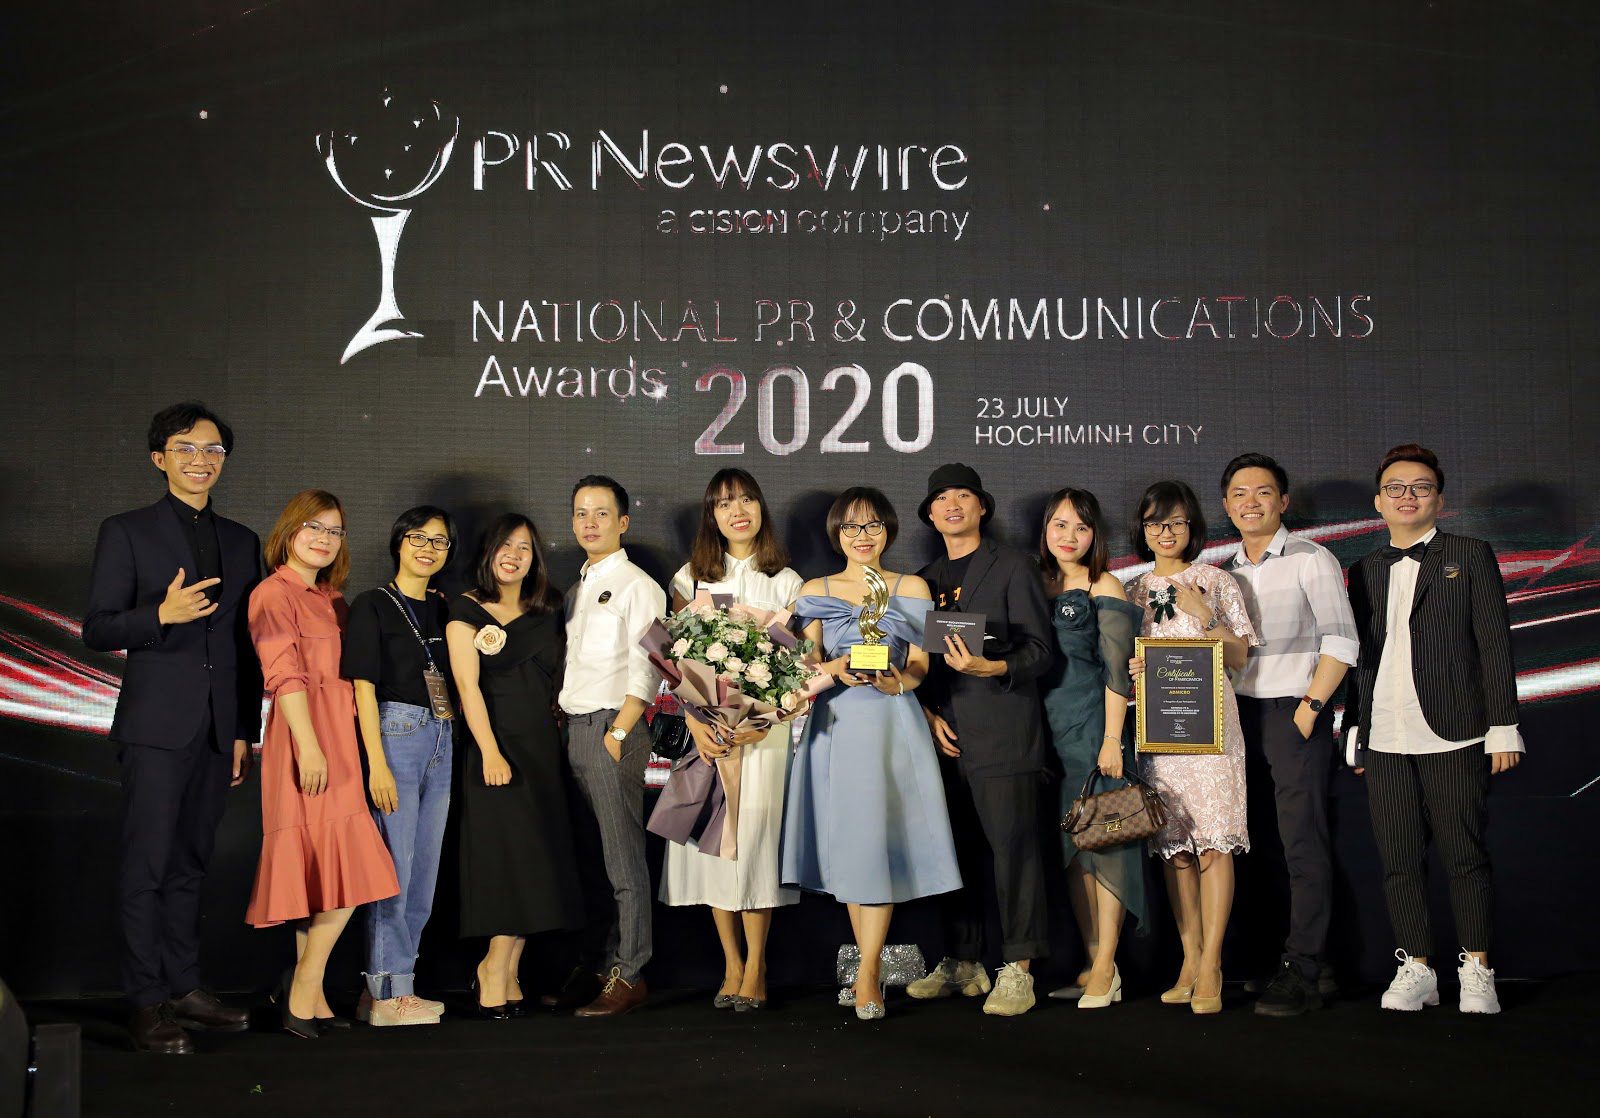 Admicro sát cánh cùng Kenh14.vn chiến thắng giải thưởng Truyền thông Đột phá PR Newswire 2020 - Ảnh 4.